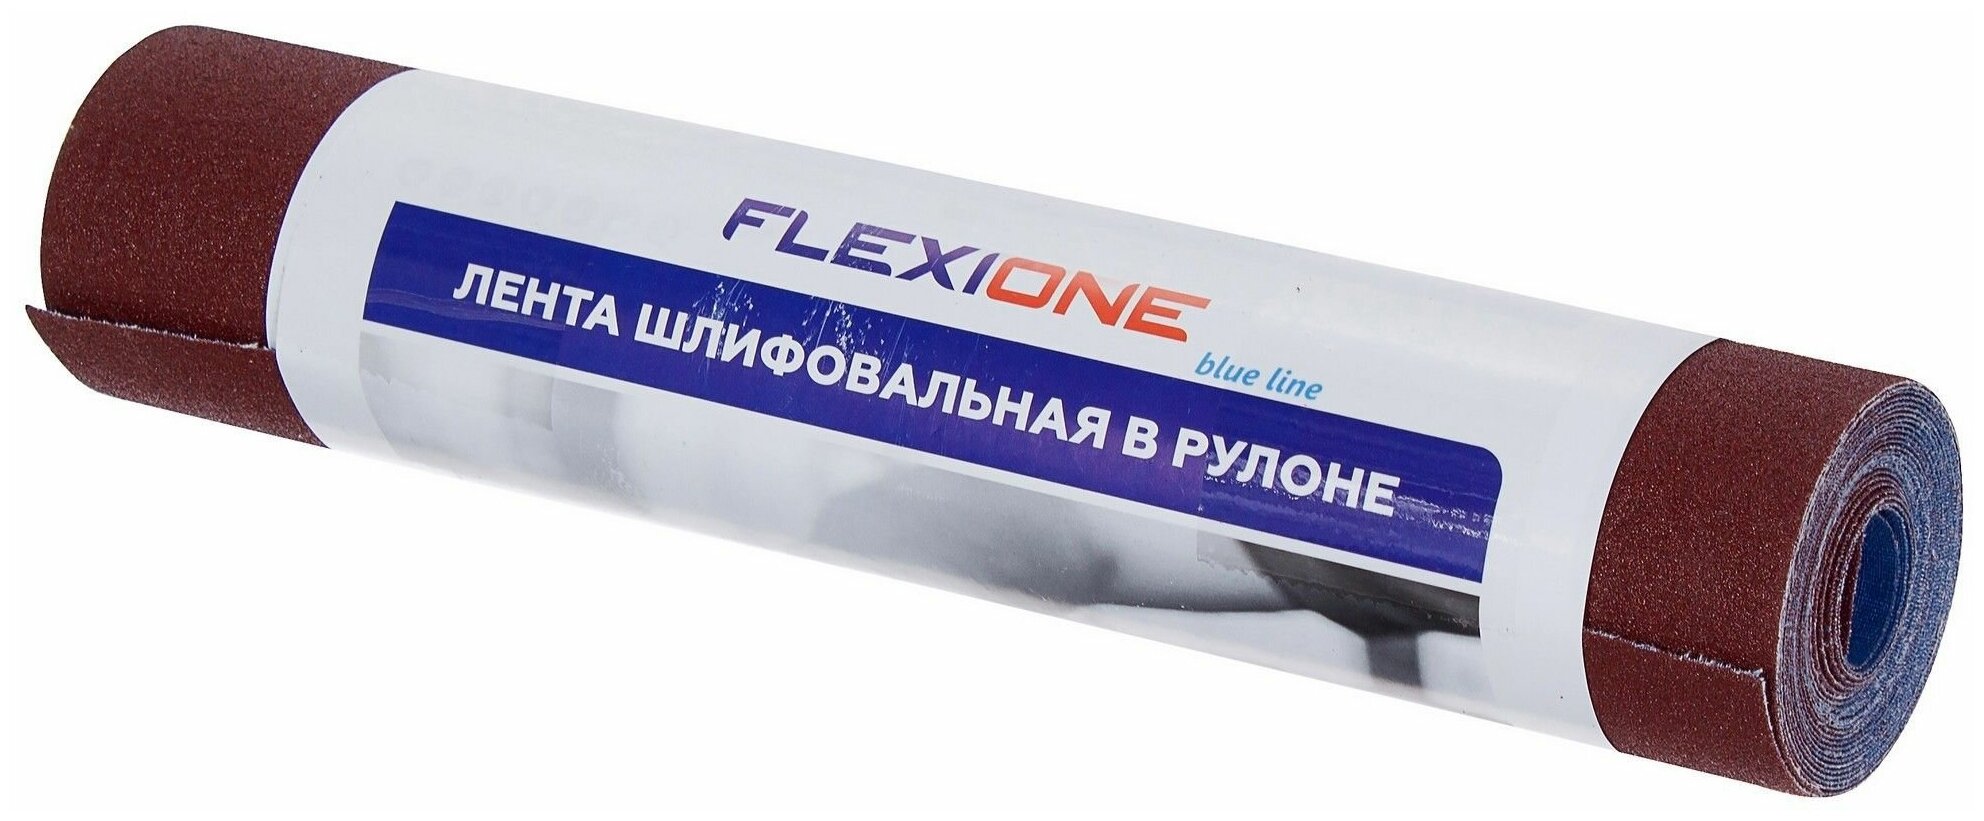 Рулон шлифовальный Flexione P120, 280x3000 мм